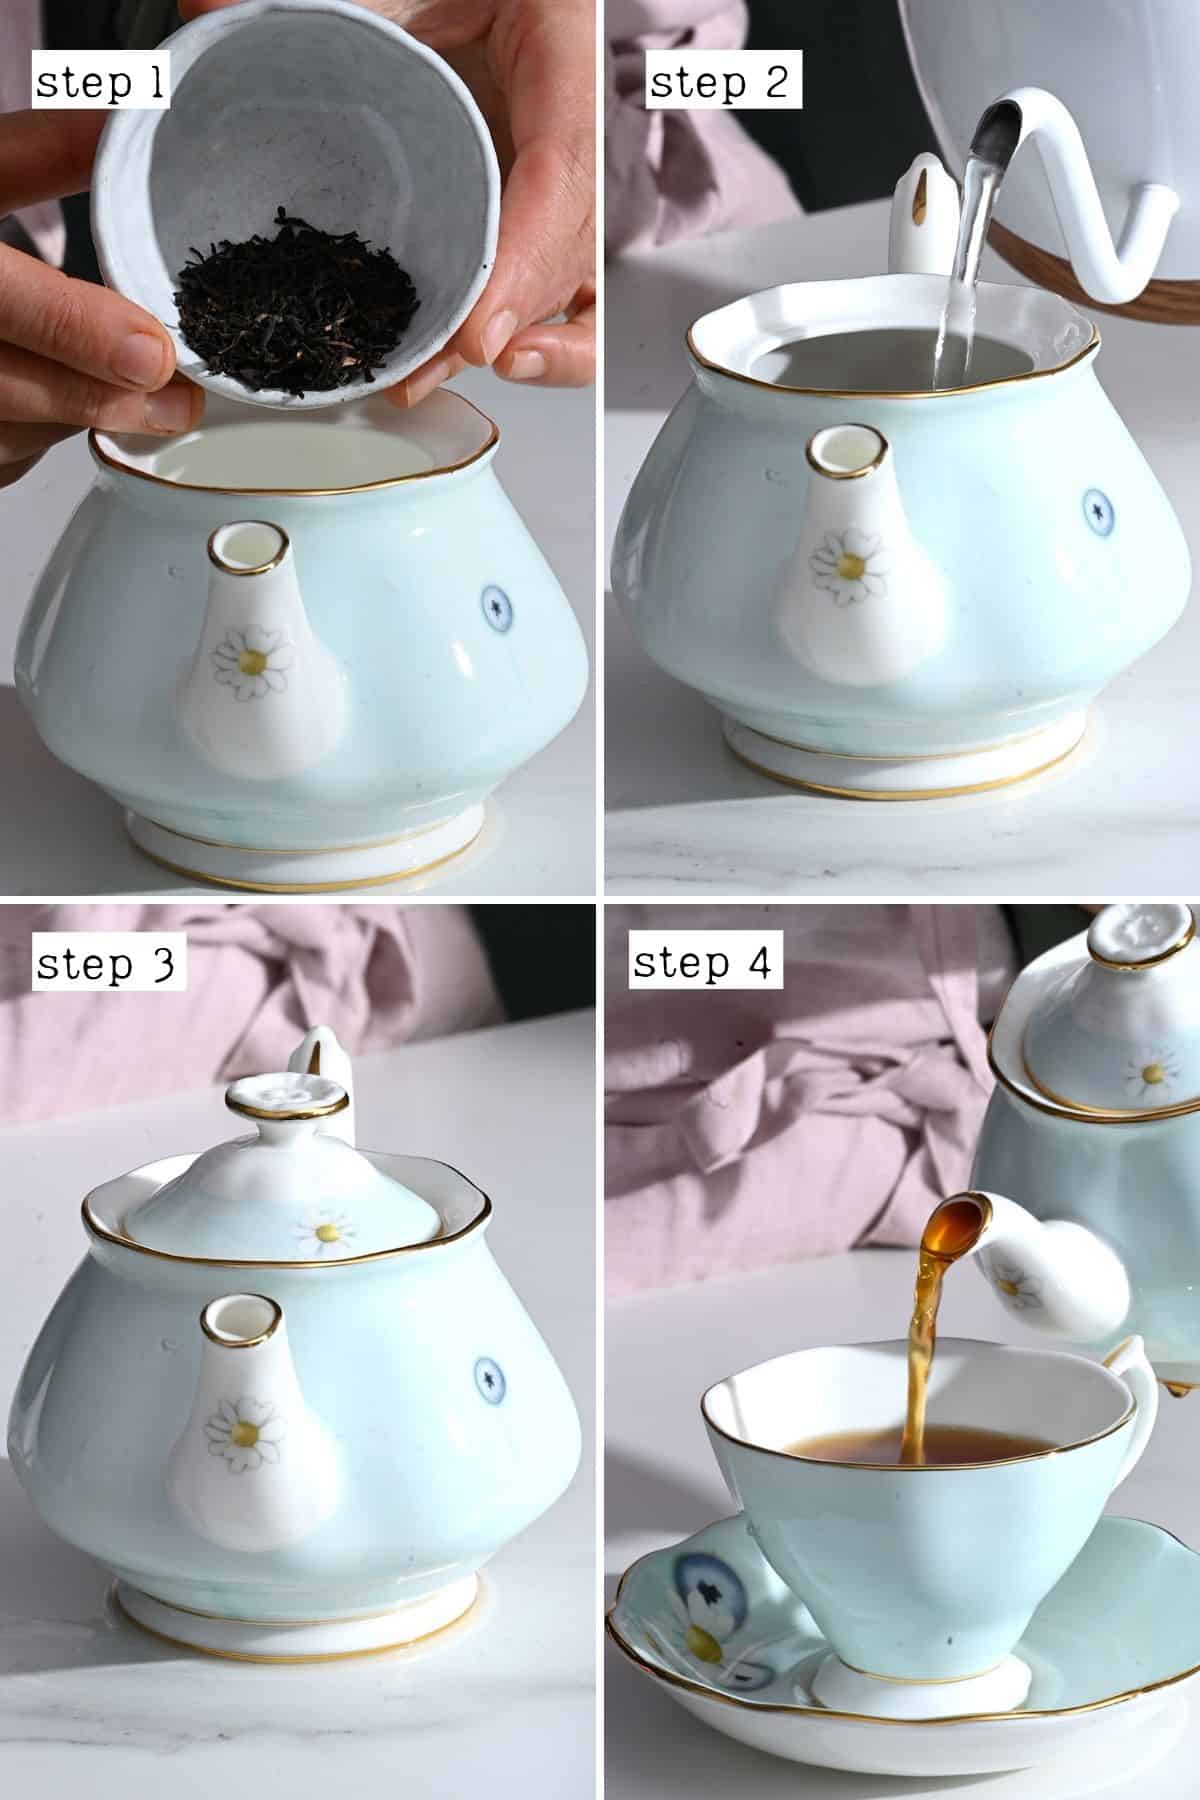 How to make Tea, Cup of Tea, Teapot